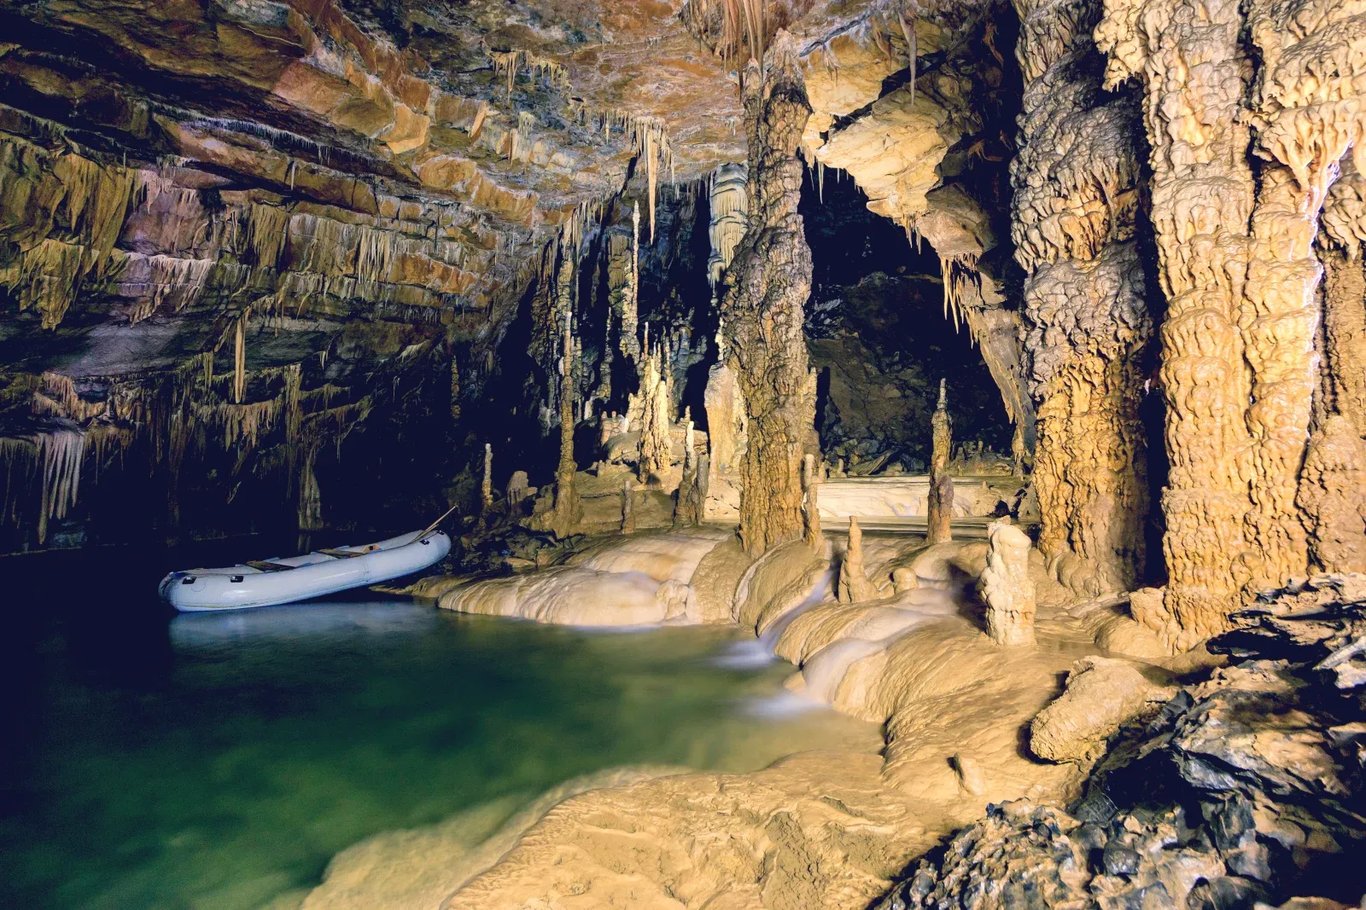 Krizna barlang, Szlovénia - A világ leghosszabb tavas barlangja